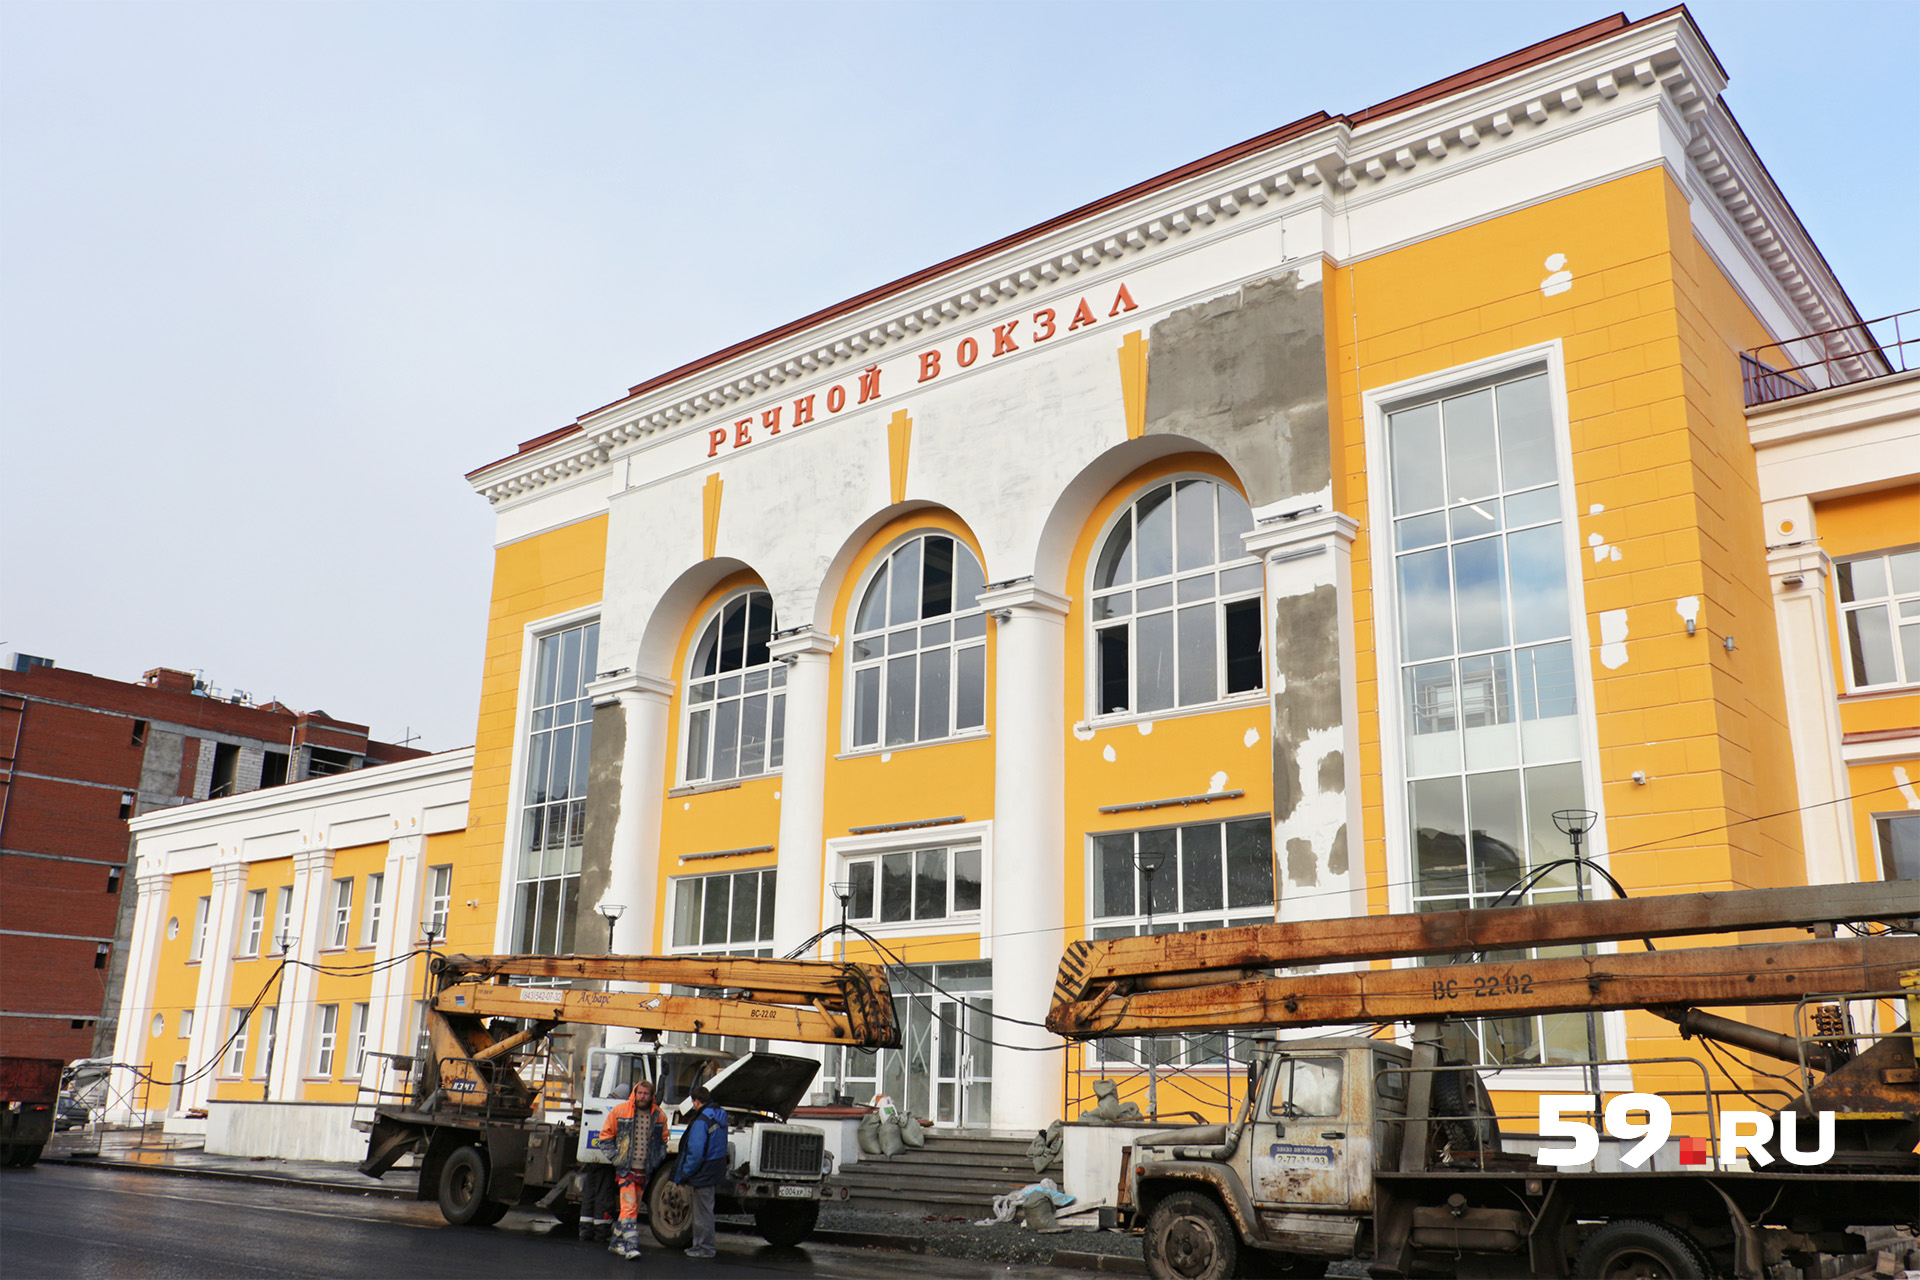 Реконструкция вокзала началась в 2016 году